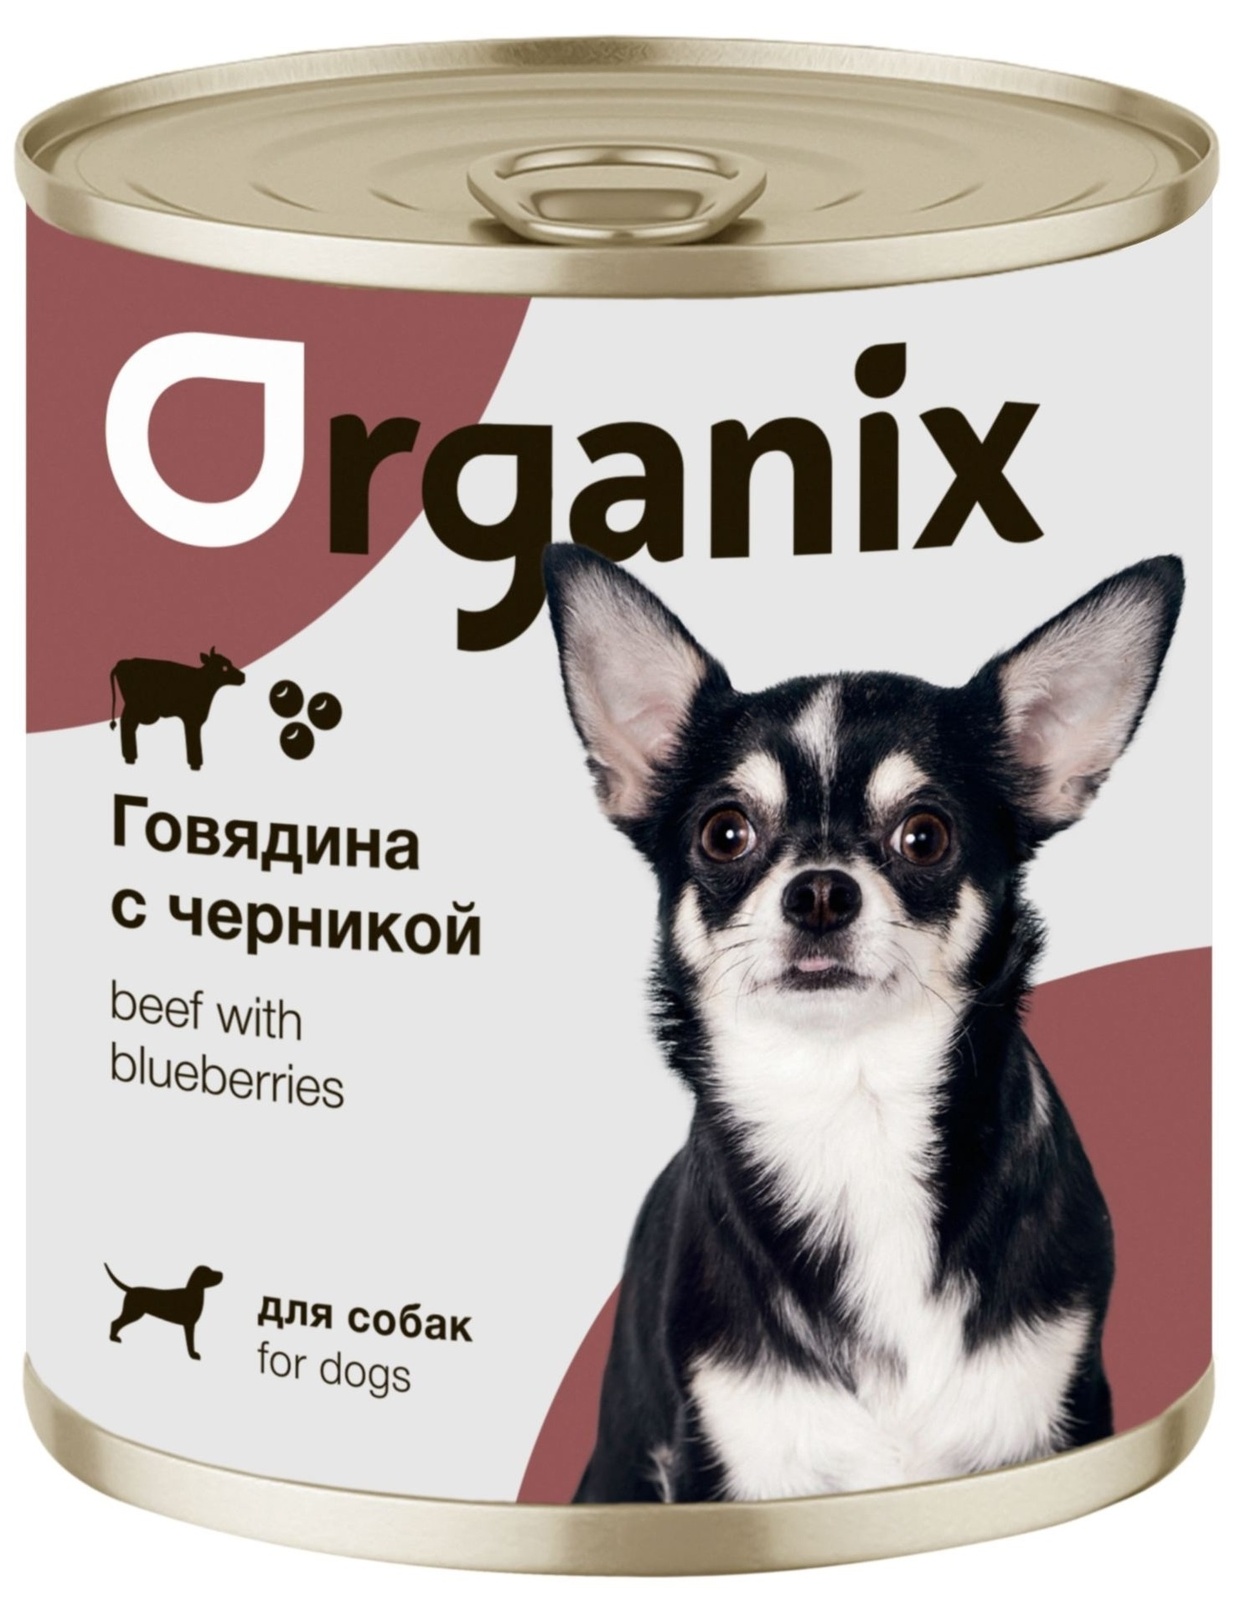 Organix консервы Organix консервы для собак Заливное из говядины с черникой (400 г) organix консервы organix консервы для собак фрикасе из гуся с яблоками и морковкой 400 г